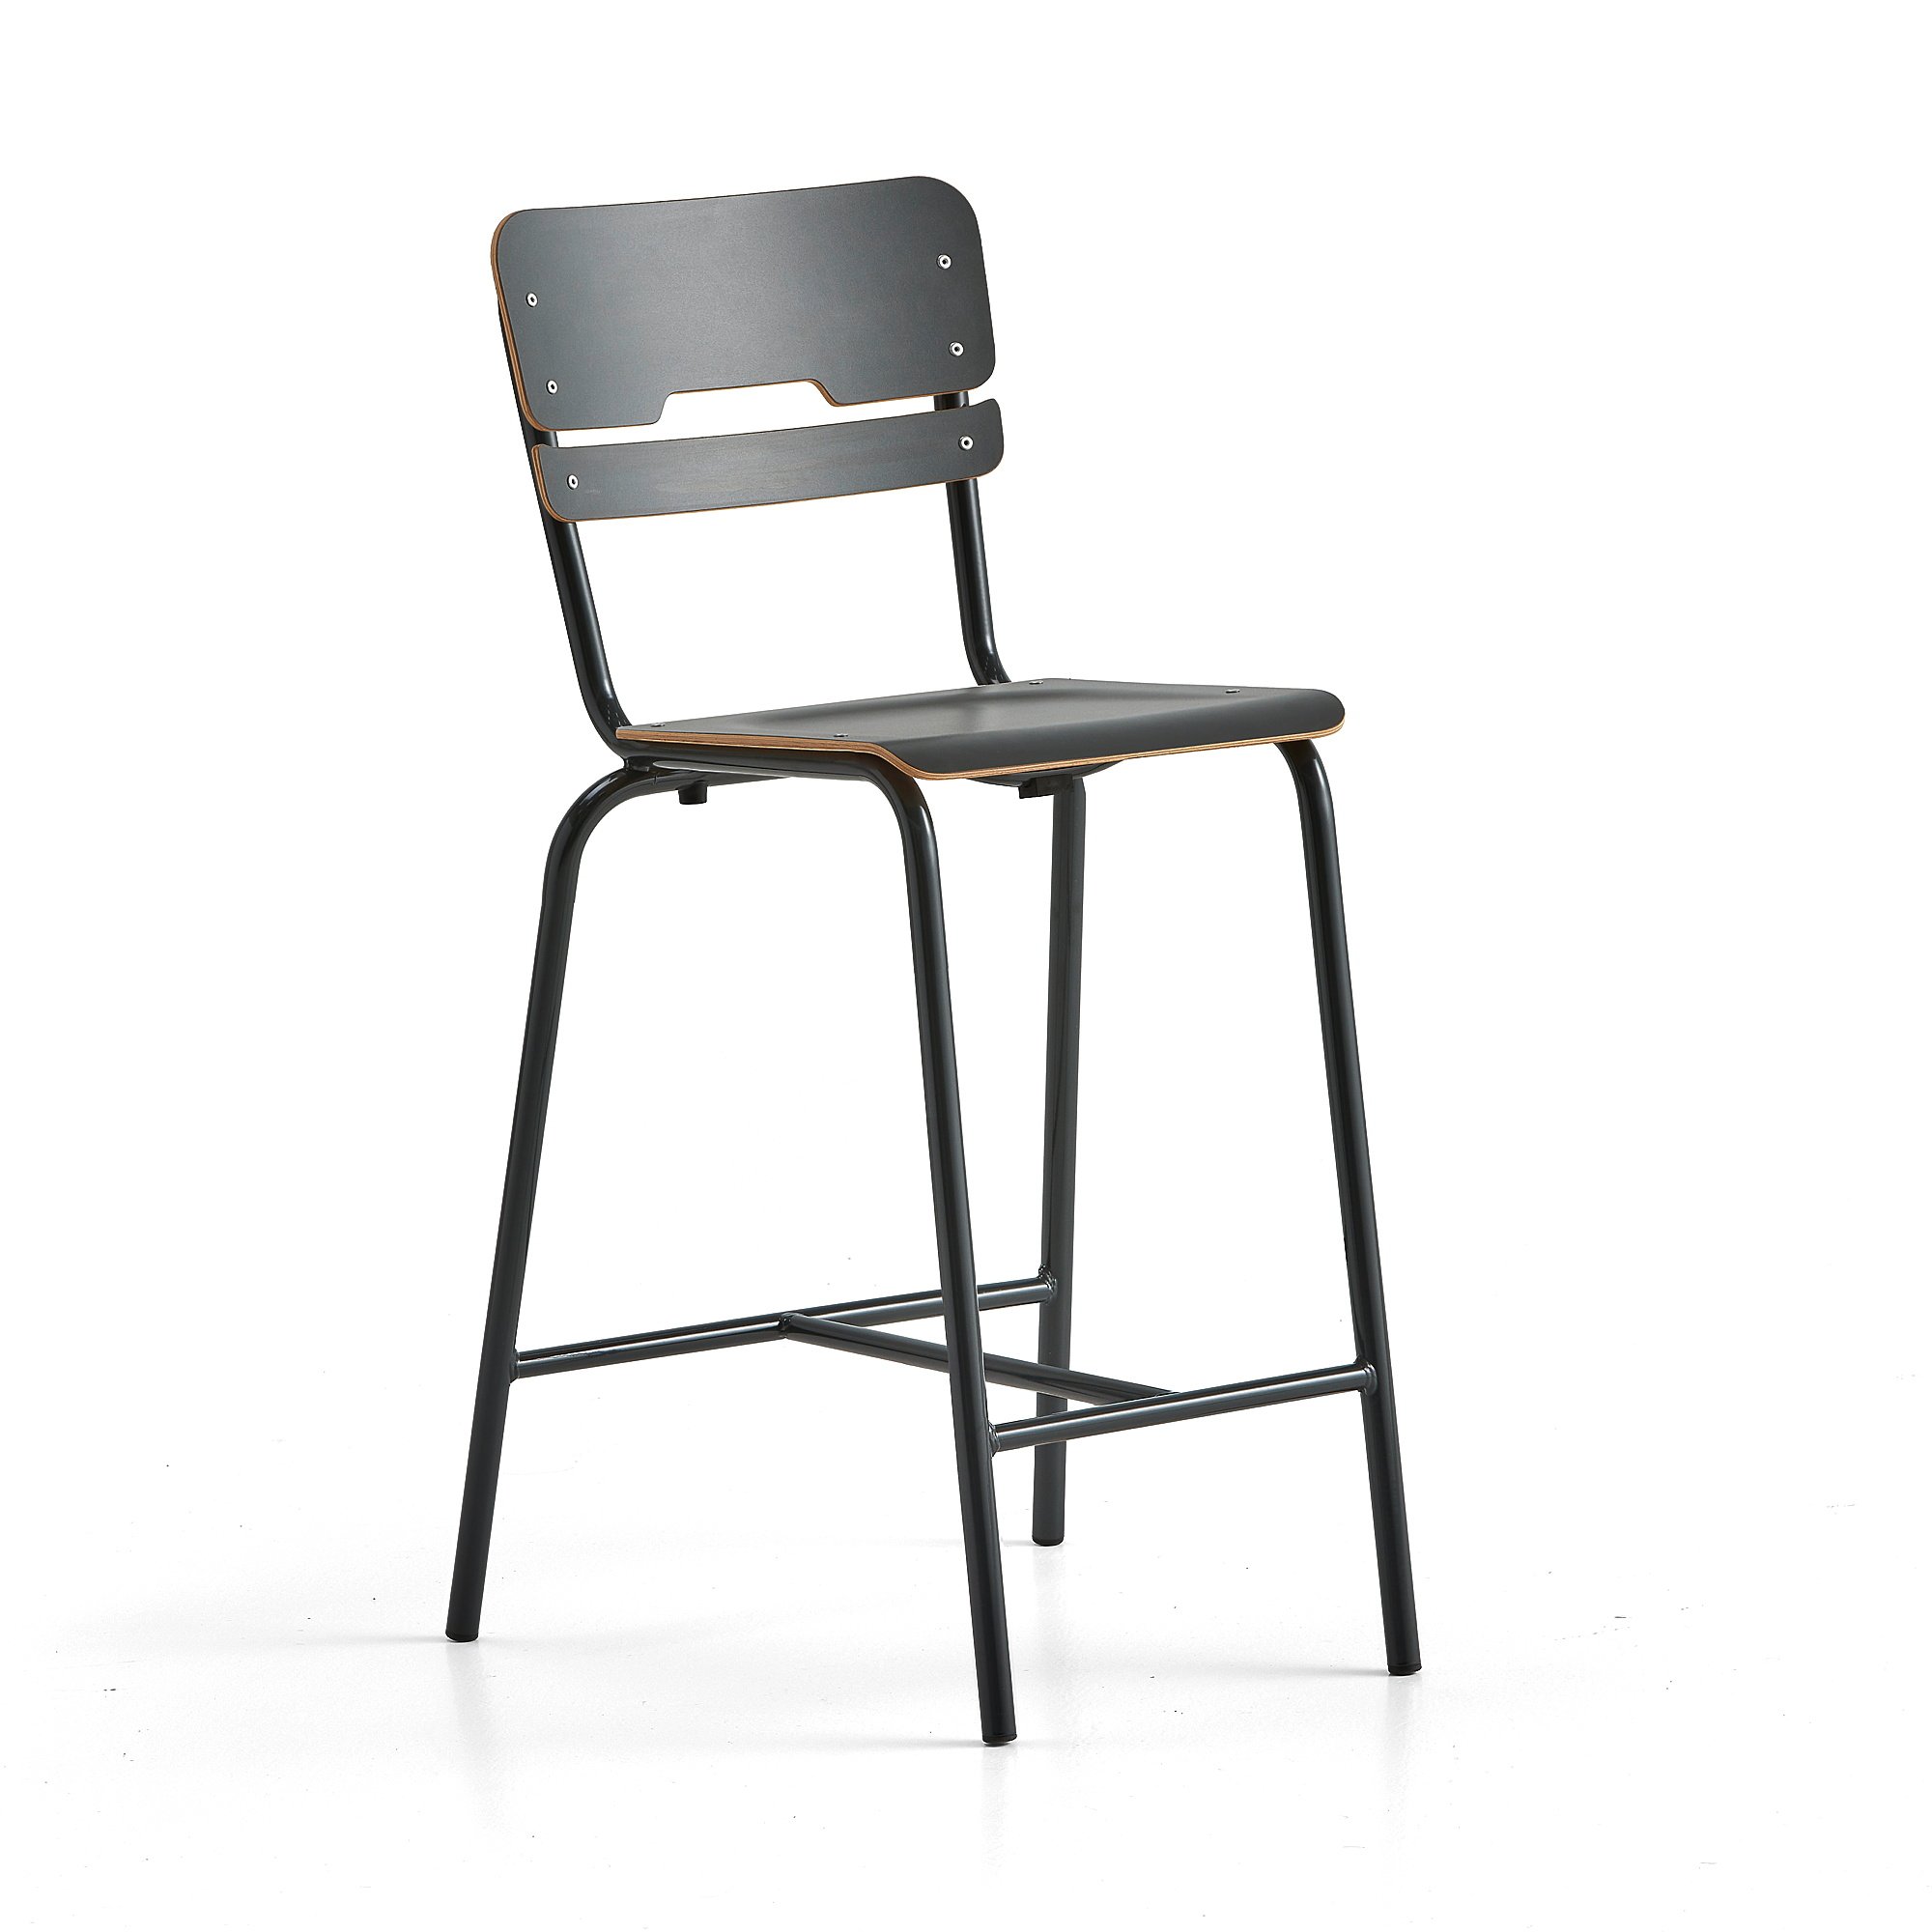 Školní židle SCIENTIA, sedák 360x360 mm, výška 650 mm, antracitová/antracitová